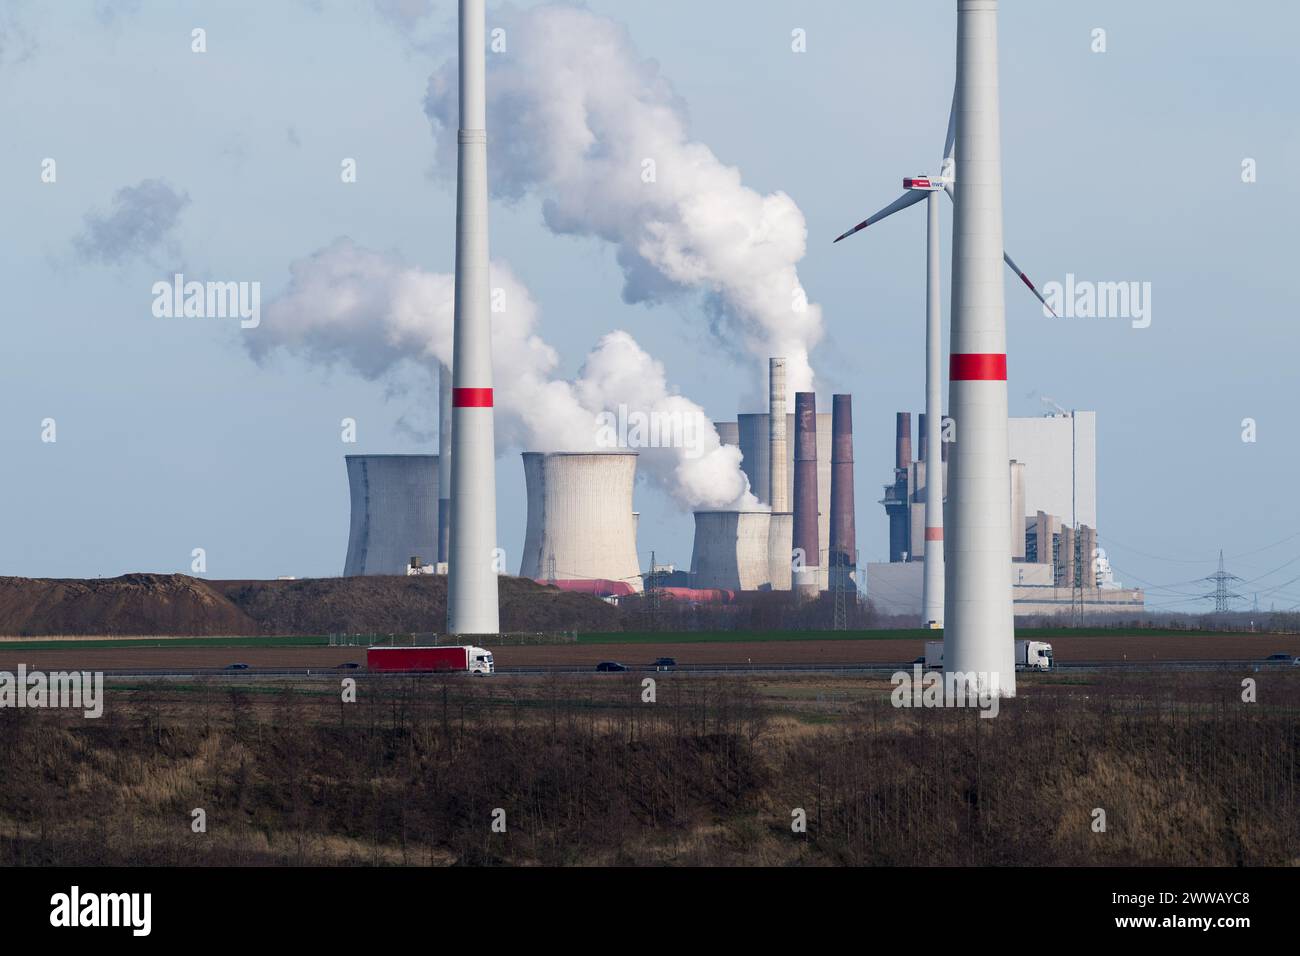 RWE Power AG Kraftwerk Neurath in Grevenbroich, North Rhine-Westphalia, Germany © Wojciech Strozyk / Alamy Stock Photo Stock Photo